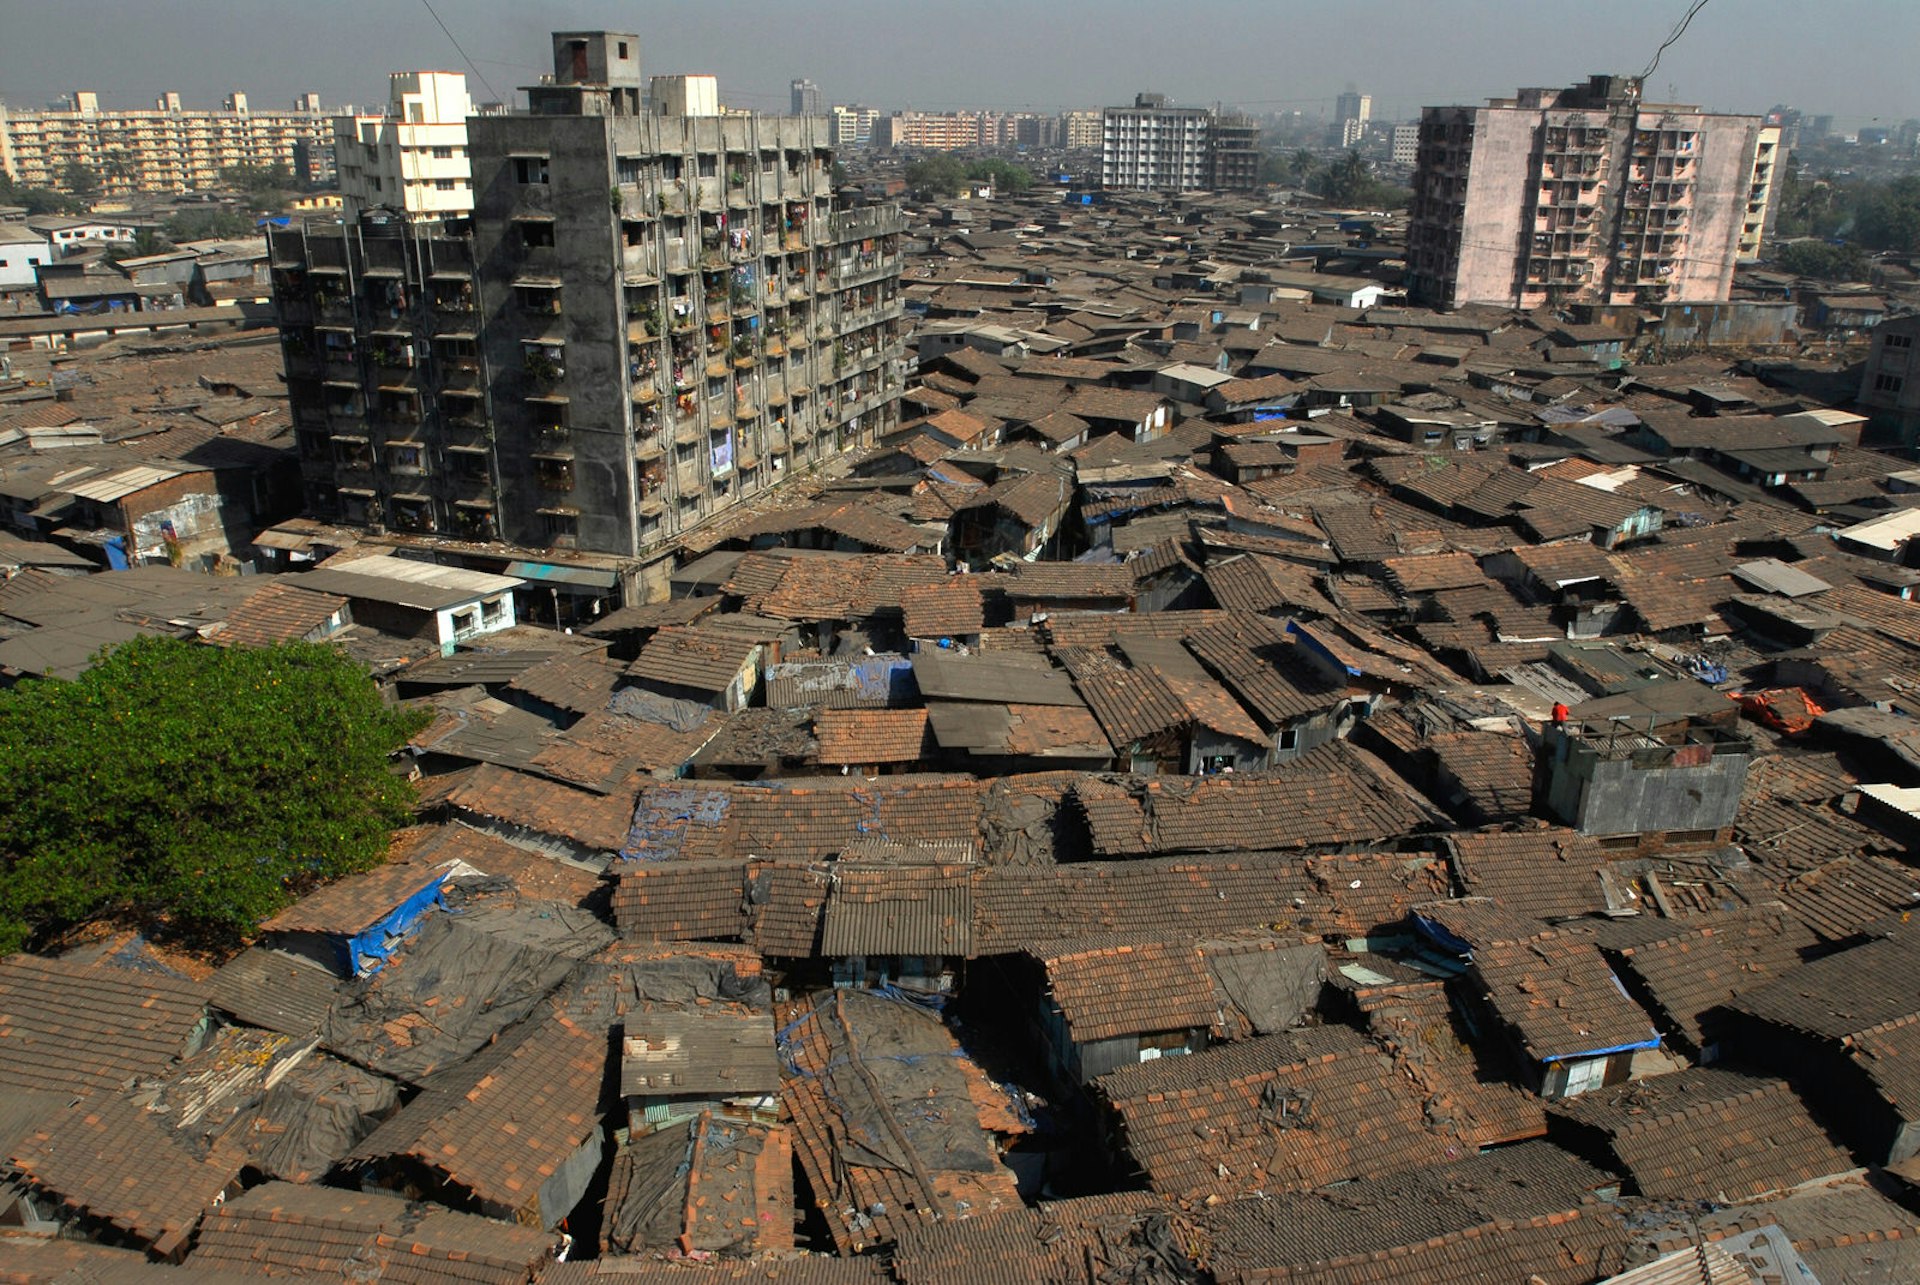 Rooftops of slum houses in Dharavi